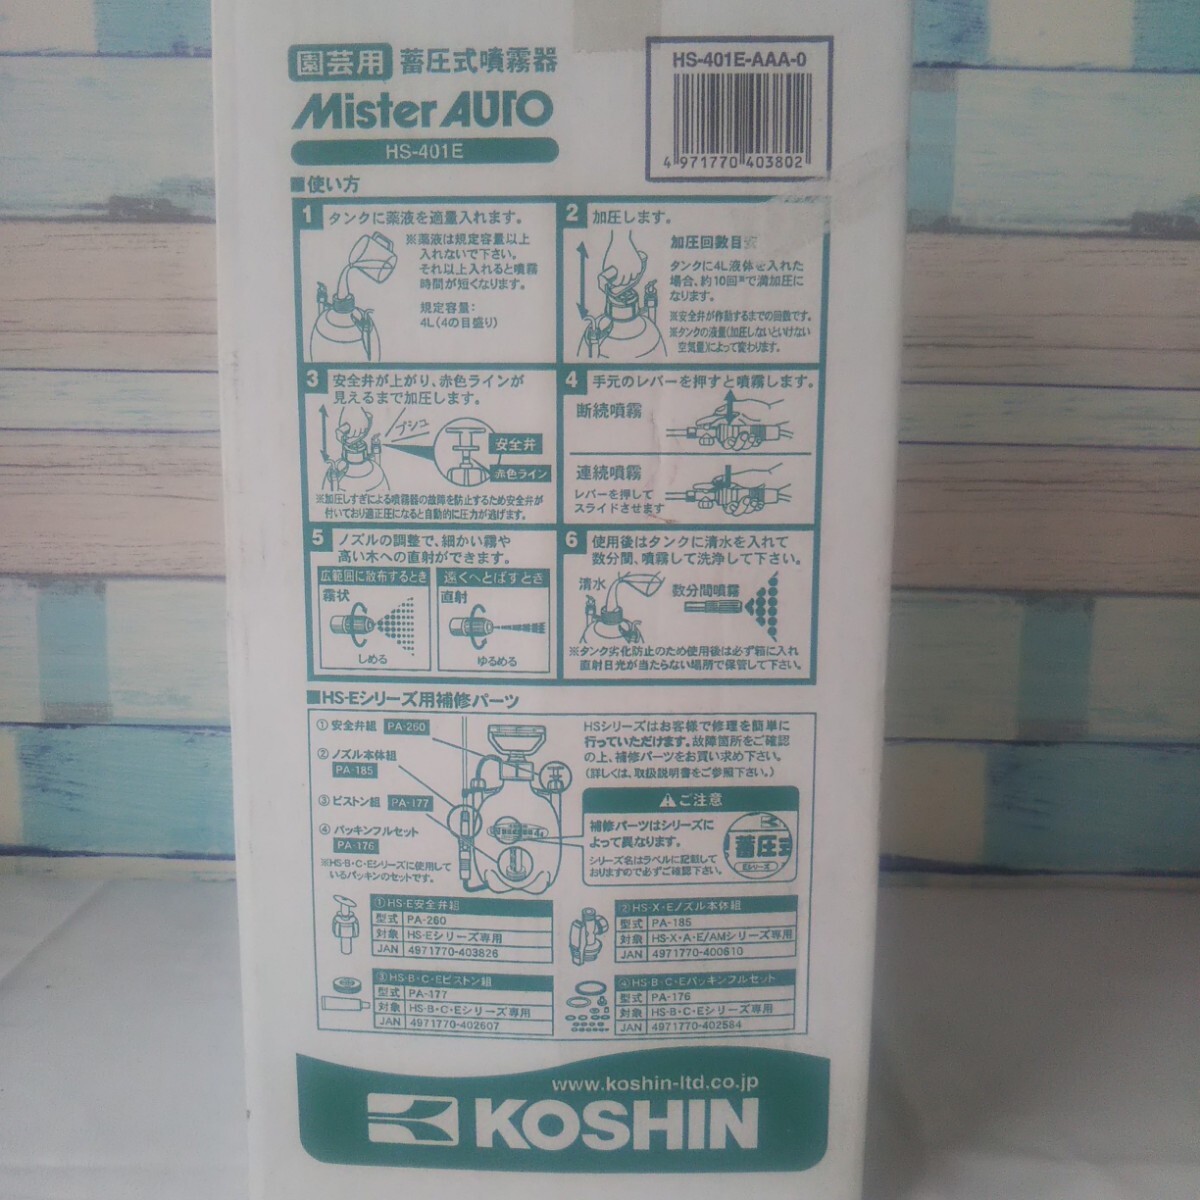  Koshin . давление тип распылитель Mr. авто HS-401E бак 4L 14~18 цубо для плечо . тип разбрызгивание не использовался 